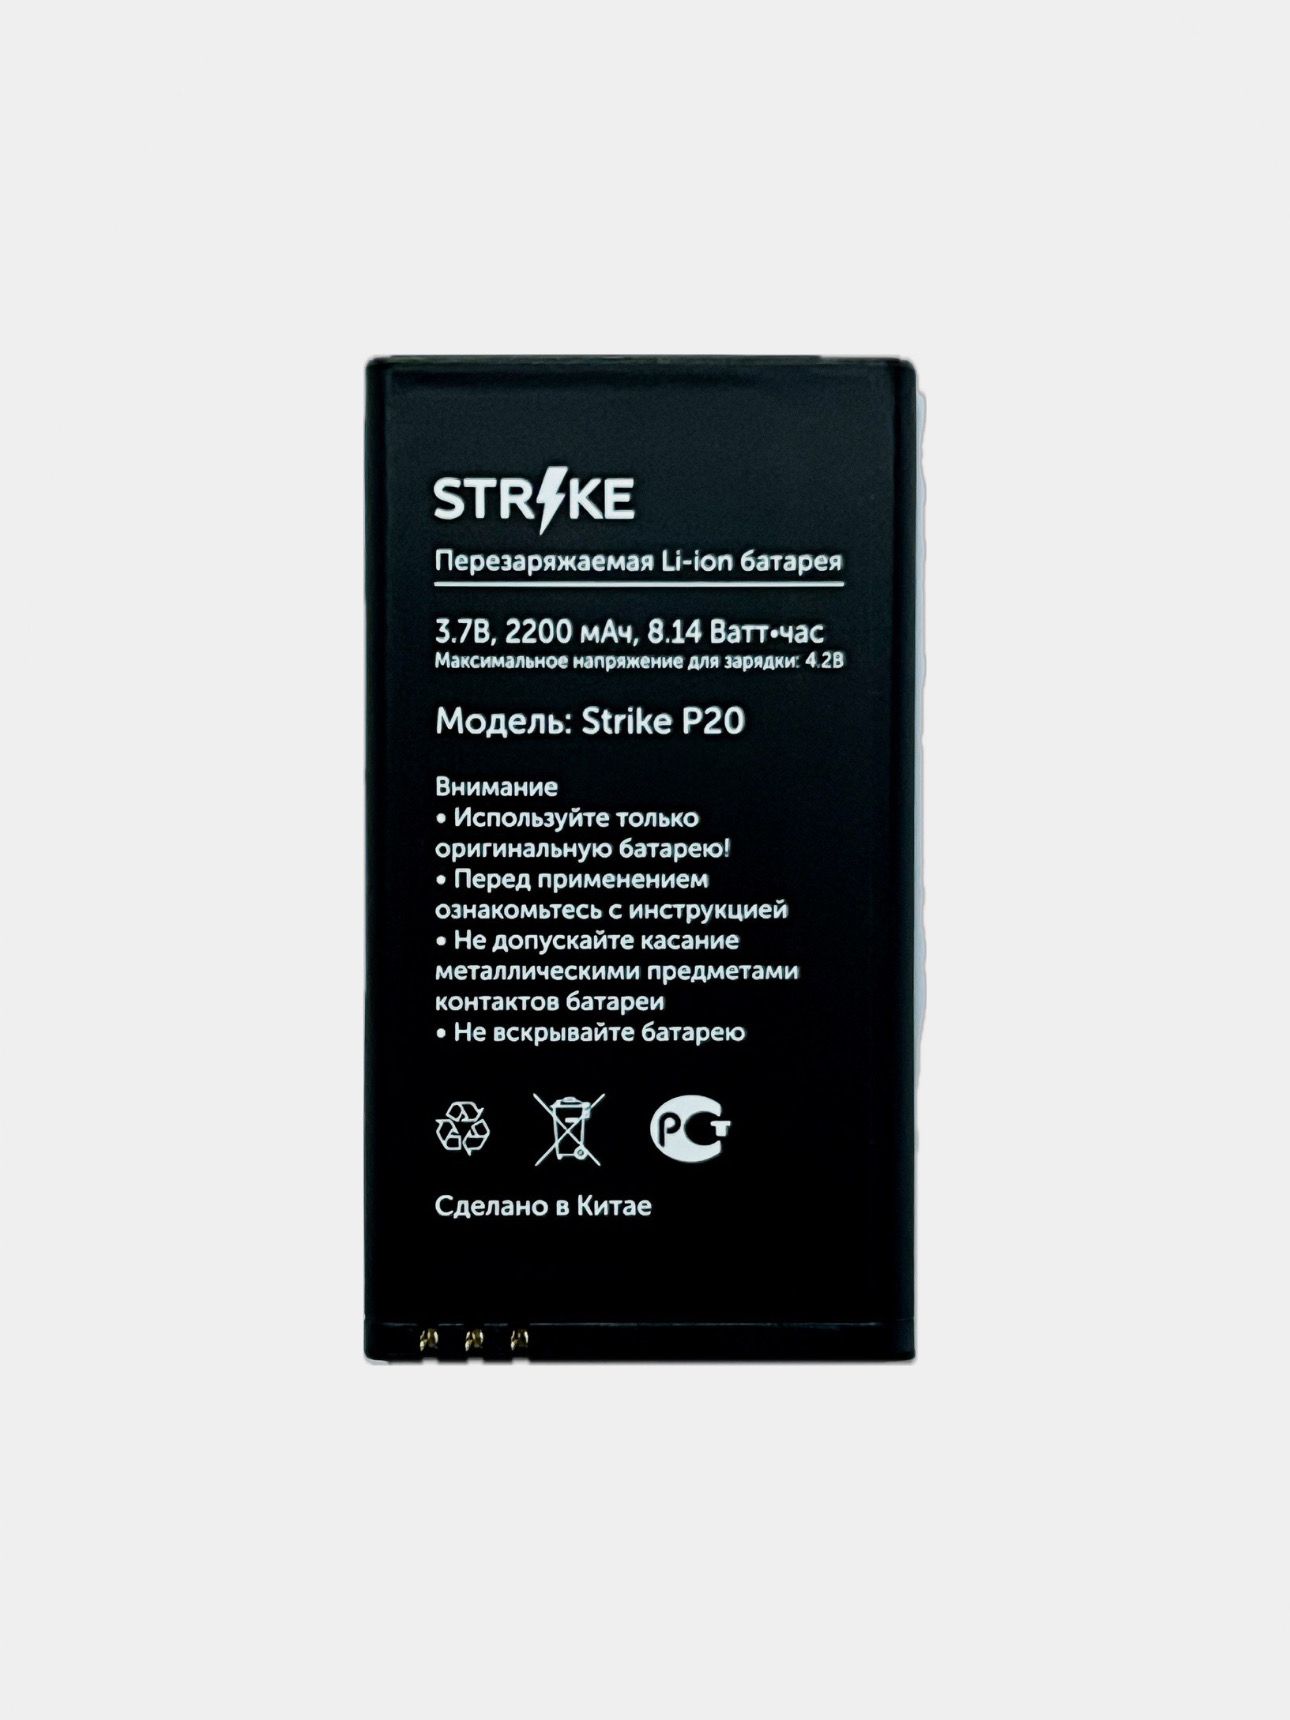 Телефон Strike P20 – купить в интернет-магазине OZON по низкой цене